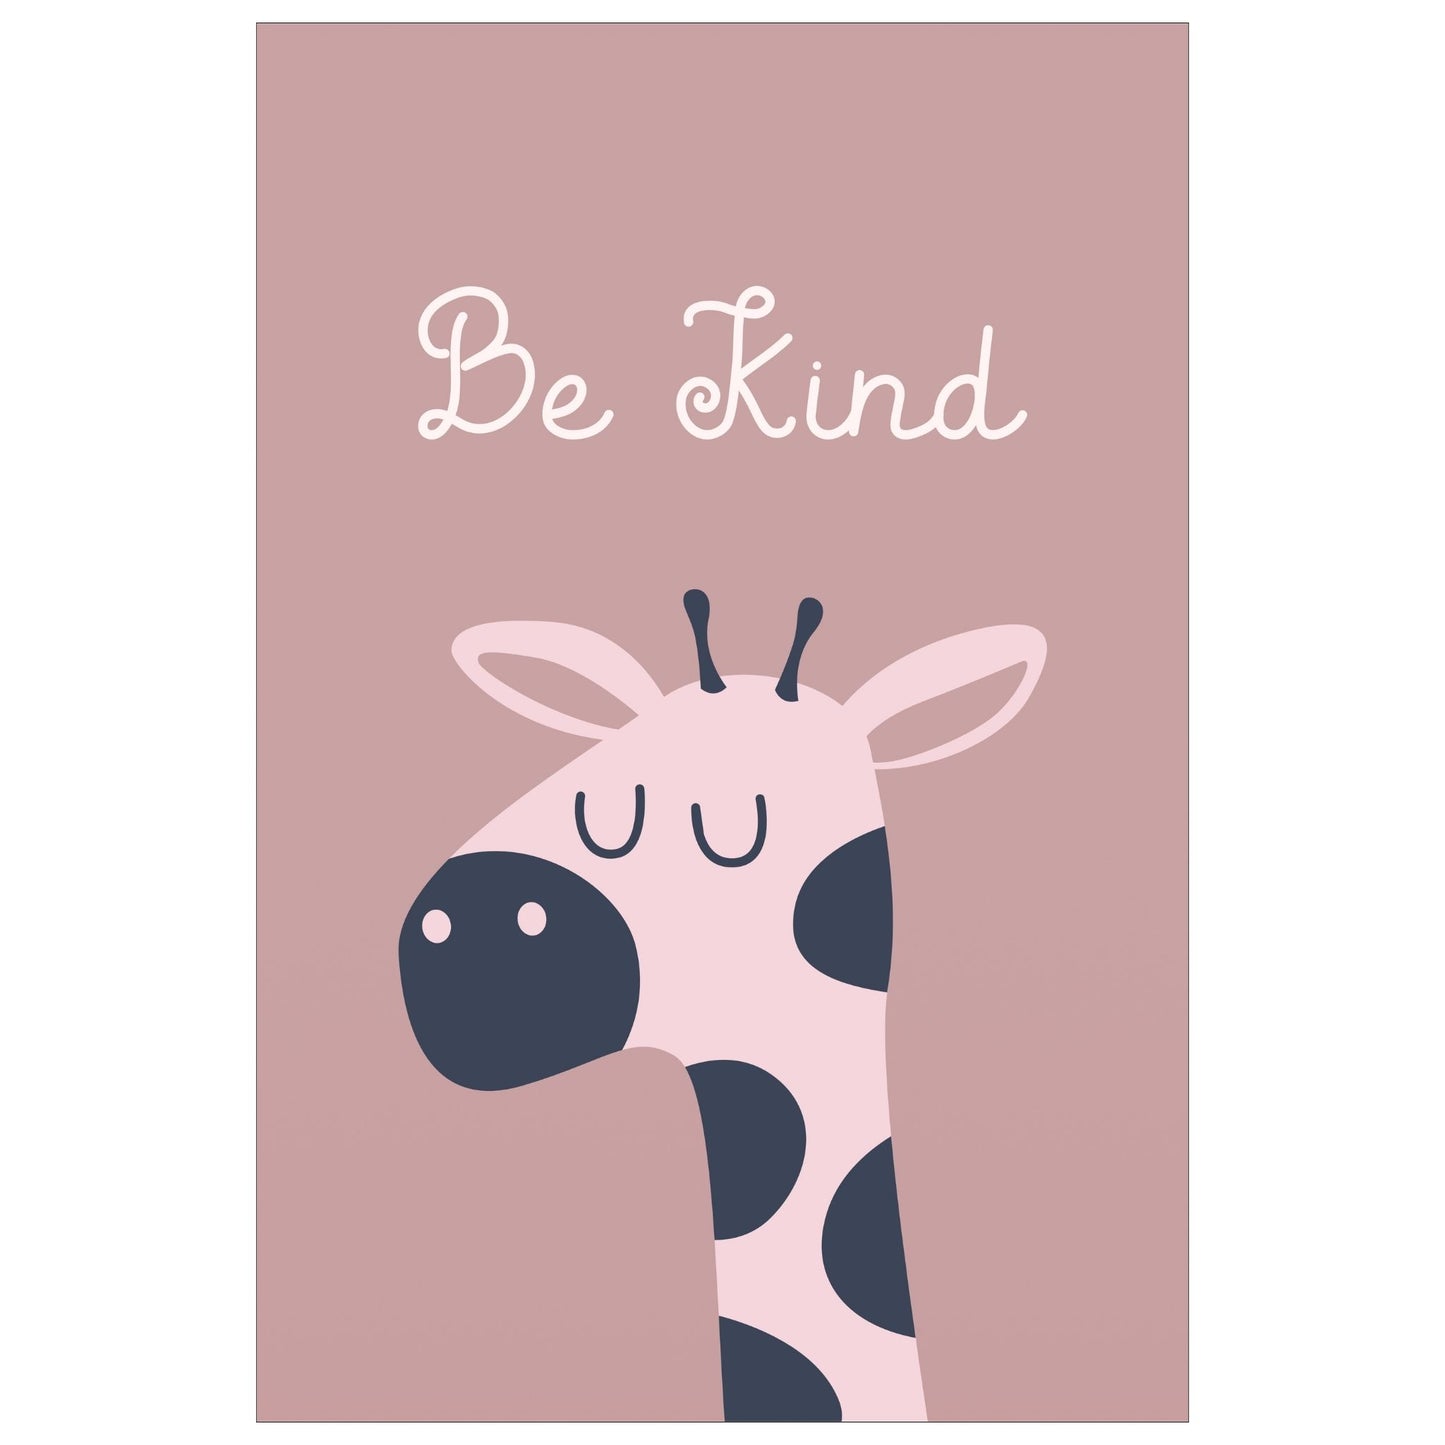 Cartoon Animal. Grafisk plakat for barnerommet. Rosa sjiraff på gammelrosa bakgrunn. Tekst "Be kind".